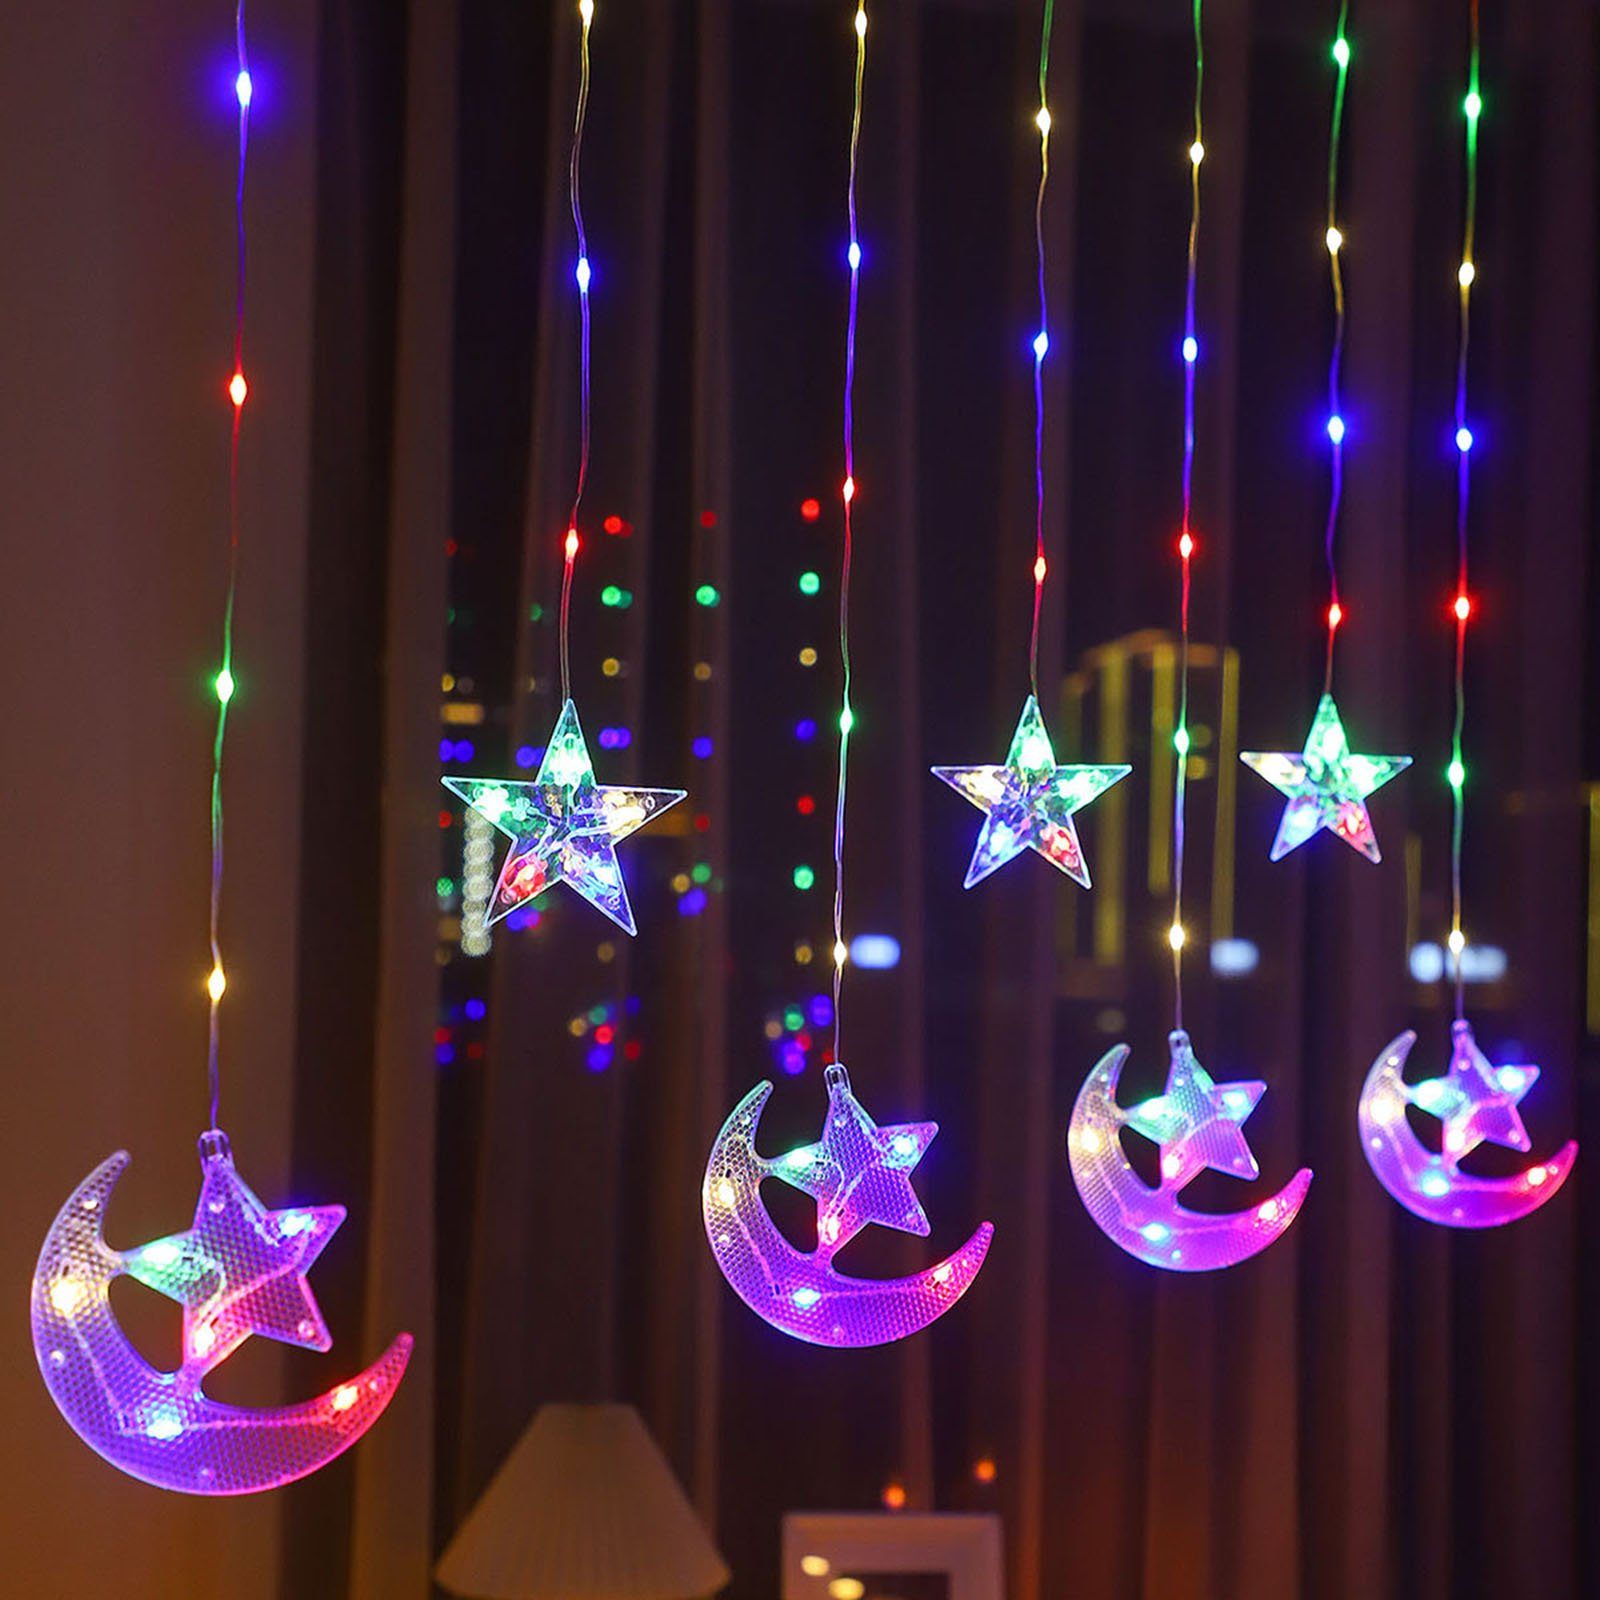 Rosnek LED-Lichtervorhang 2.3M, Mond mit Stern, batterie, für Zelt Party Ramadan Weihnachten, Schlafzimmer Camping Multicolor